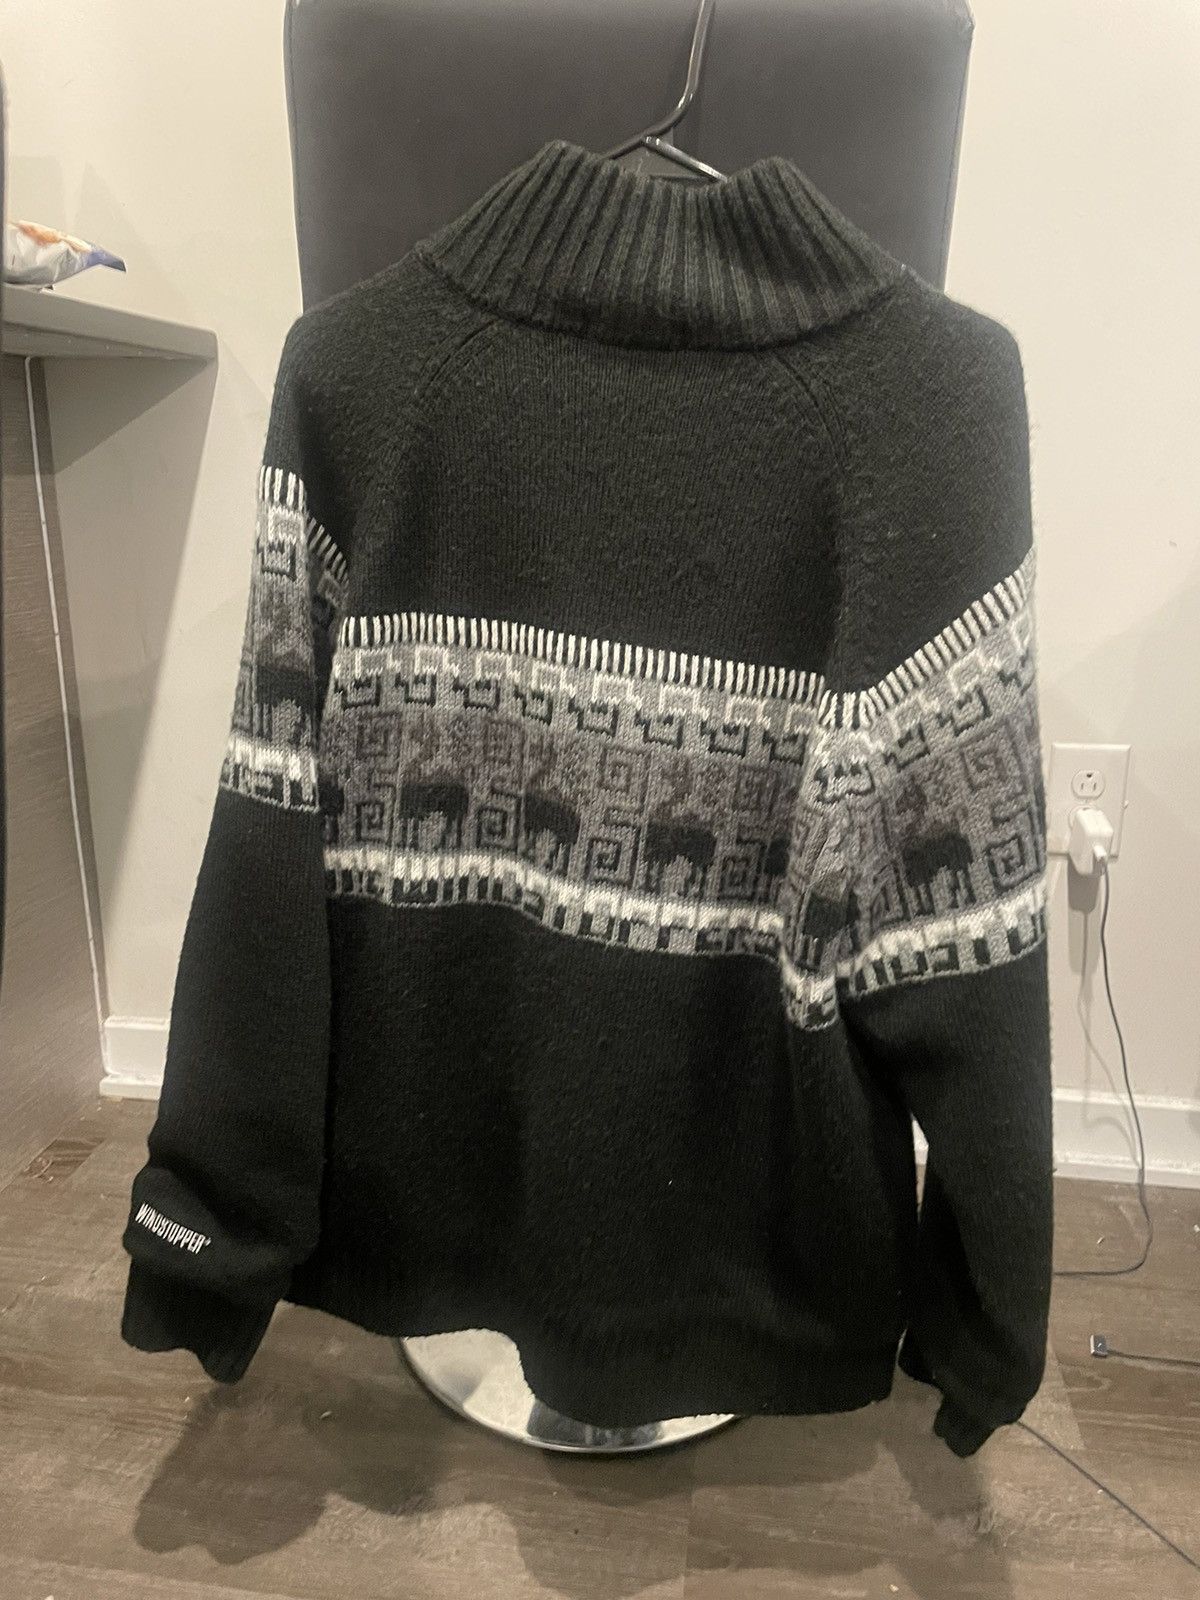 Supreme Supreme Chullo Windstopper Zip Up Sweater Black | Grailed